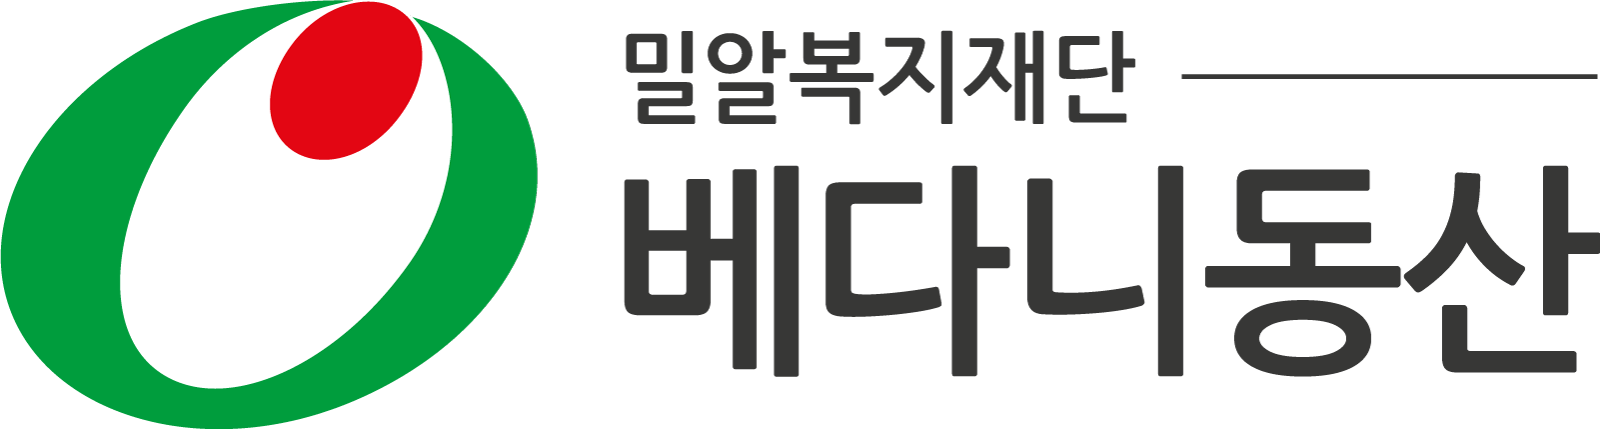 베다니동산 Logo & CI